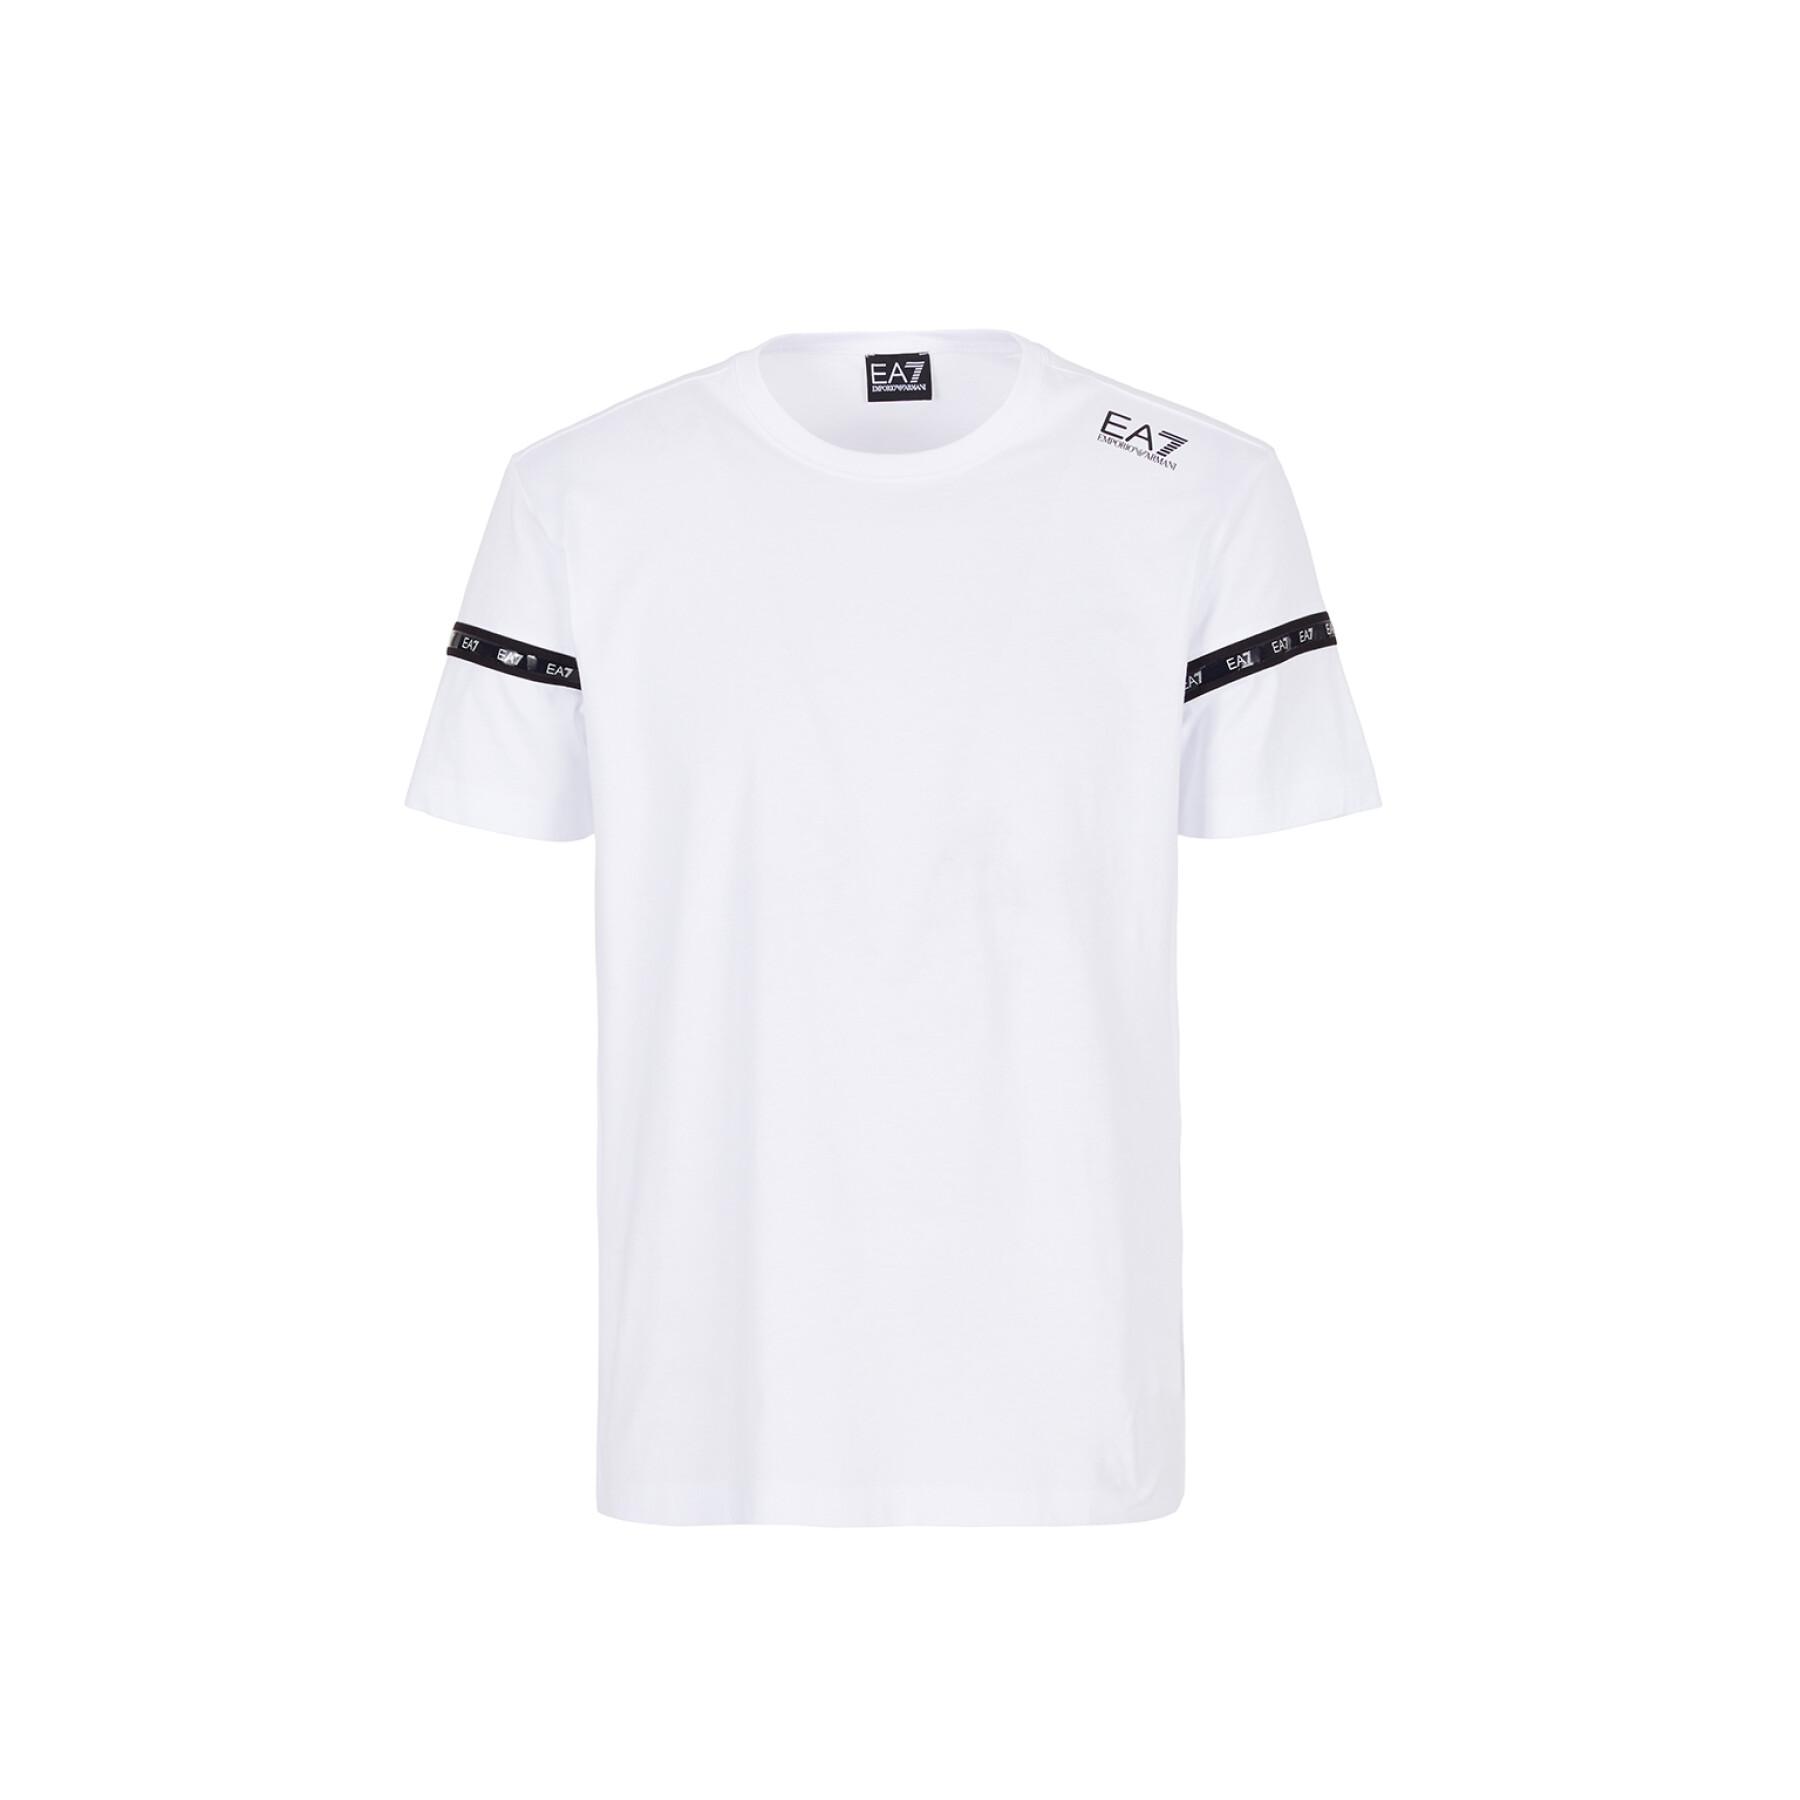 T-shirt EA7 Emporio Armani 6KPT20-PJ02Z bianco